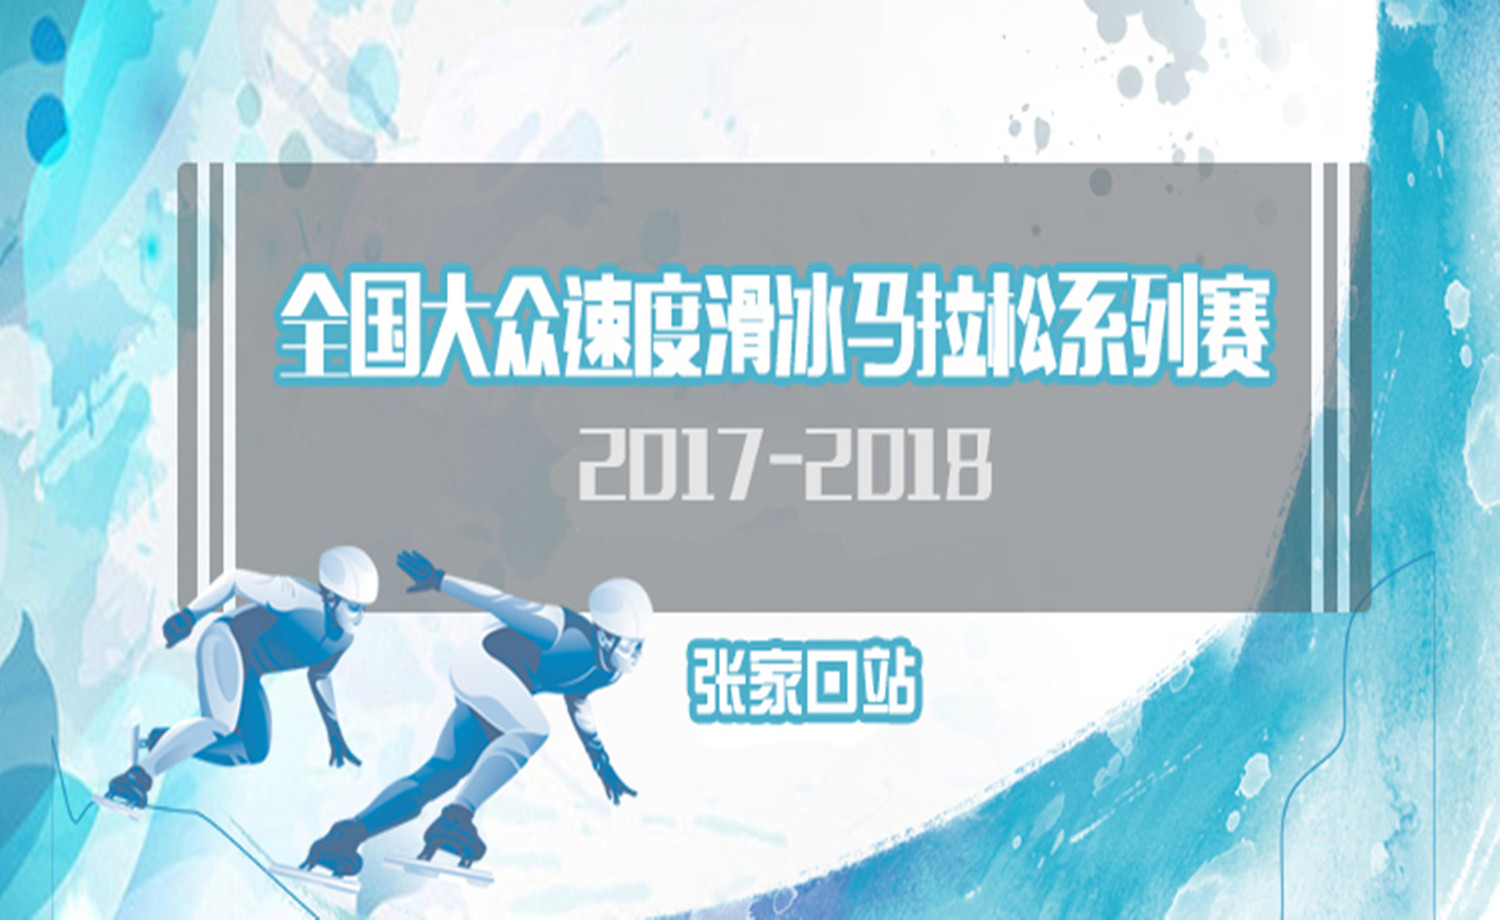 2017—2018年全国大众速度滑冰马拉松赛-张家口站